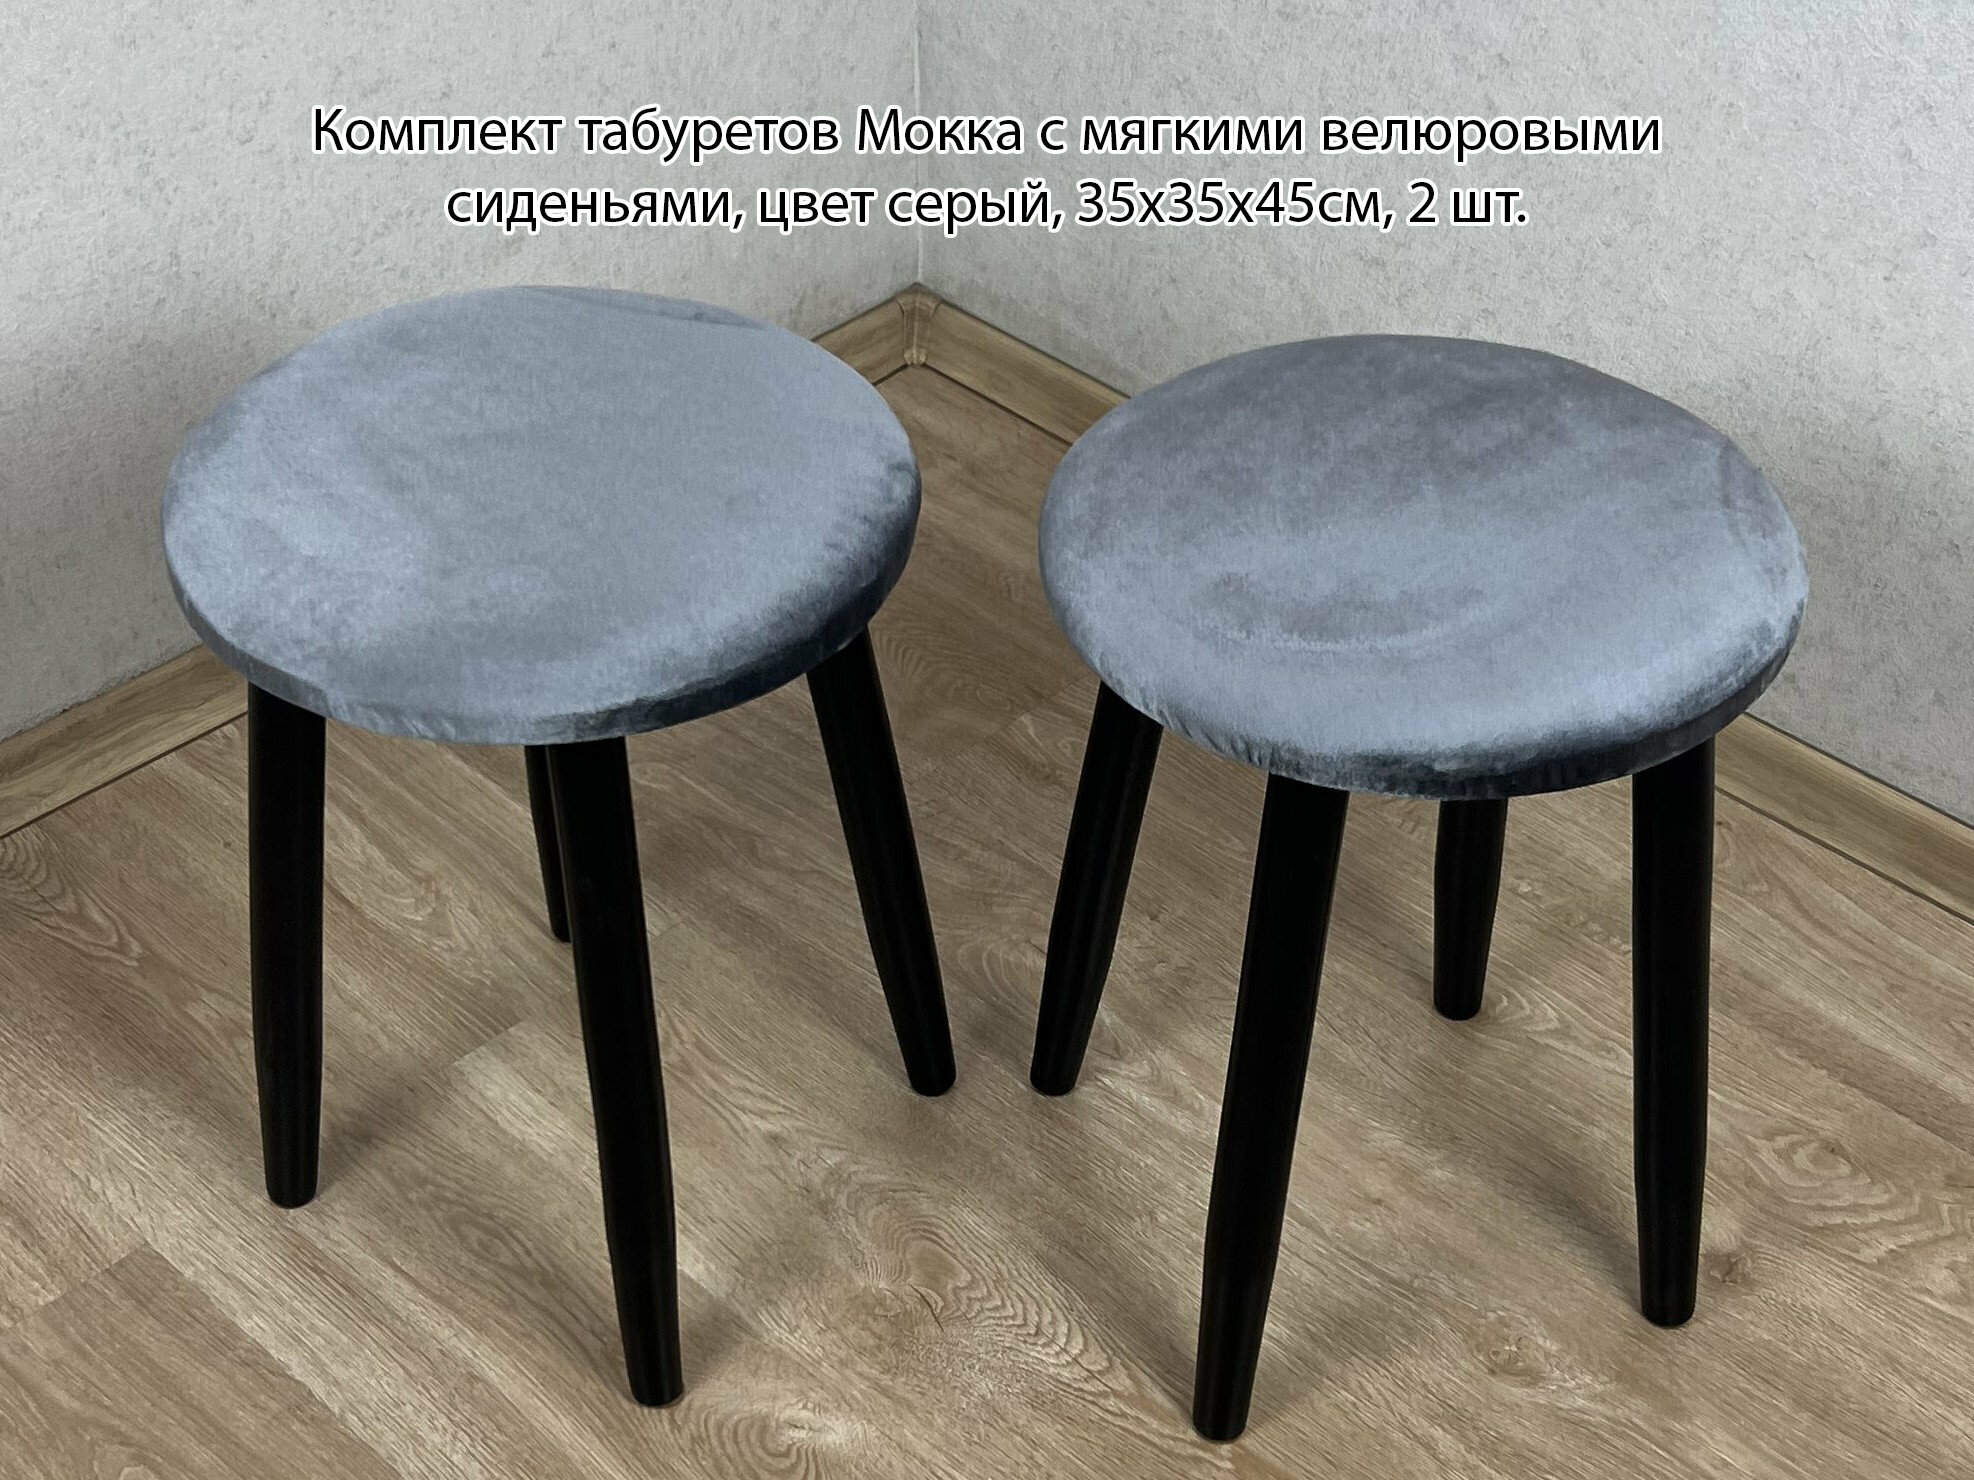 Комплект табуретов Мокка круглых для кухни с мягким велюровым сиденьем серого цвета на черных ножках 2 шт.